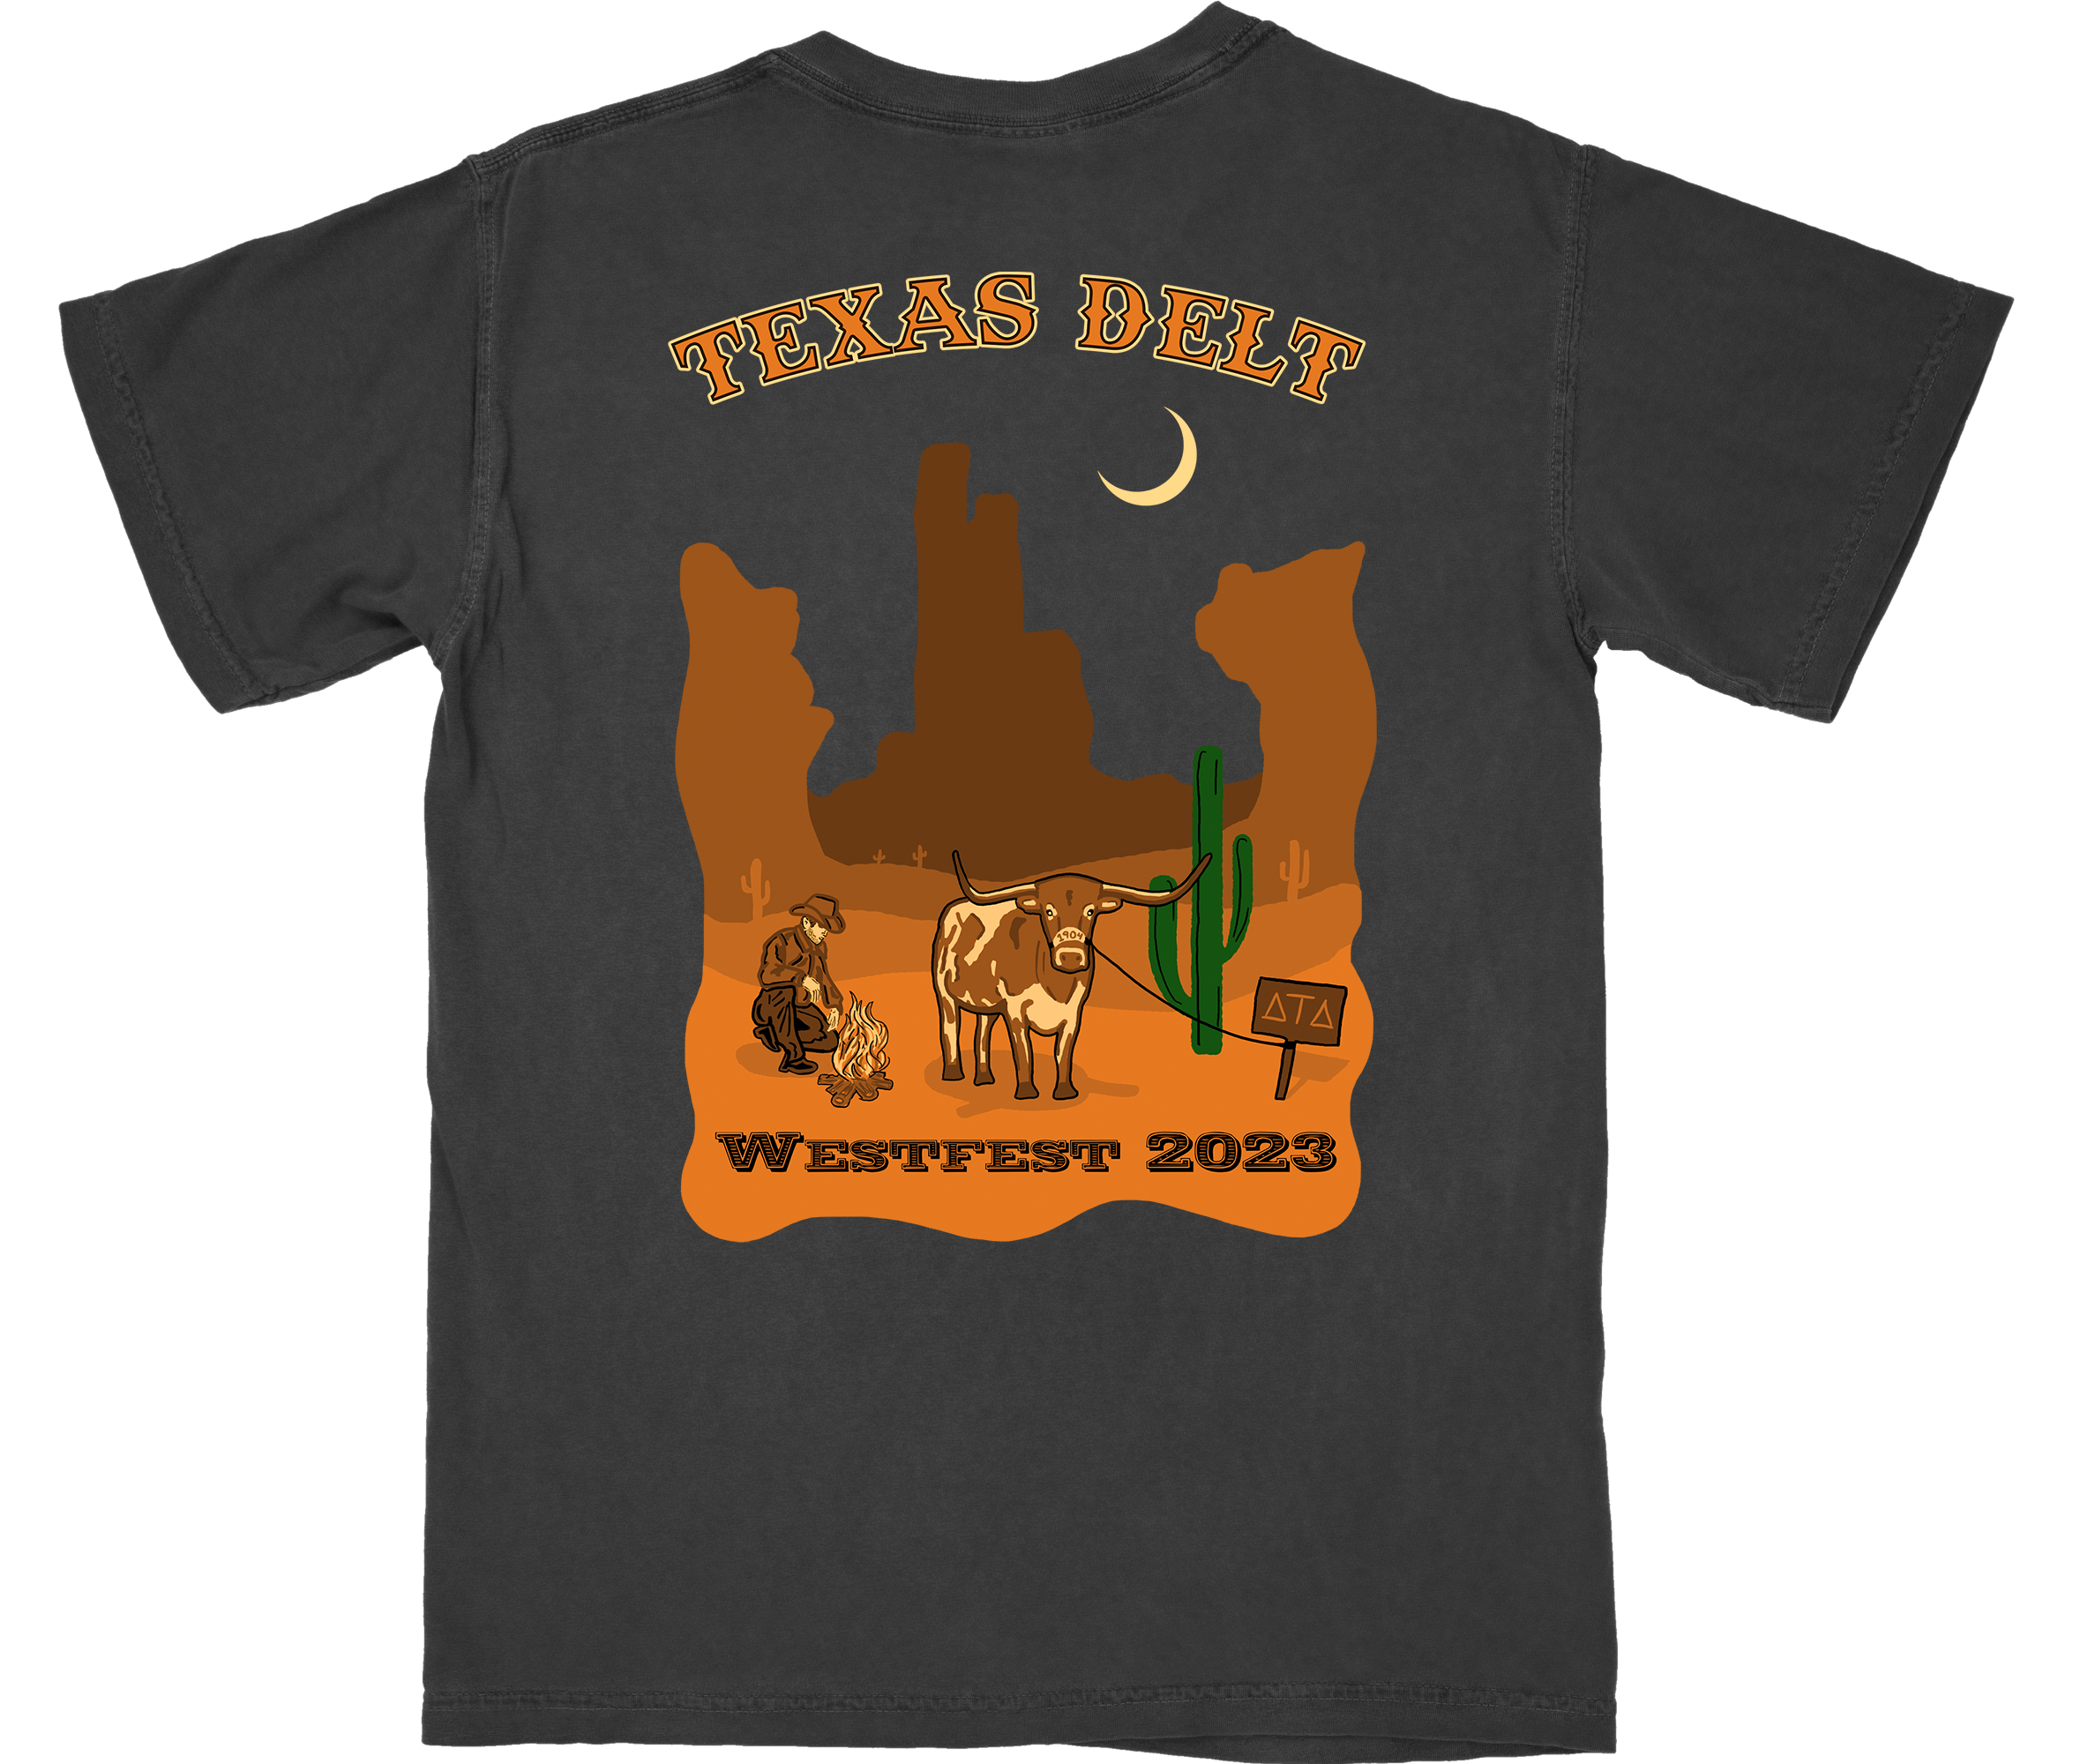 Delt West Fest Shirt